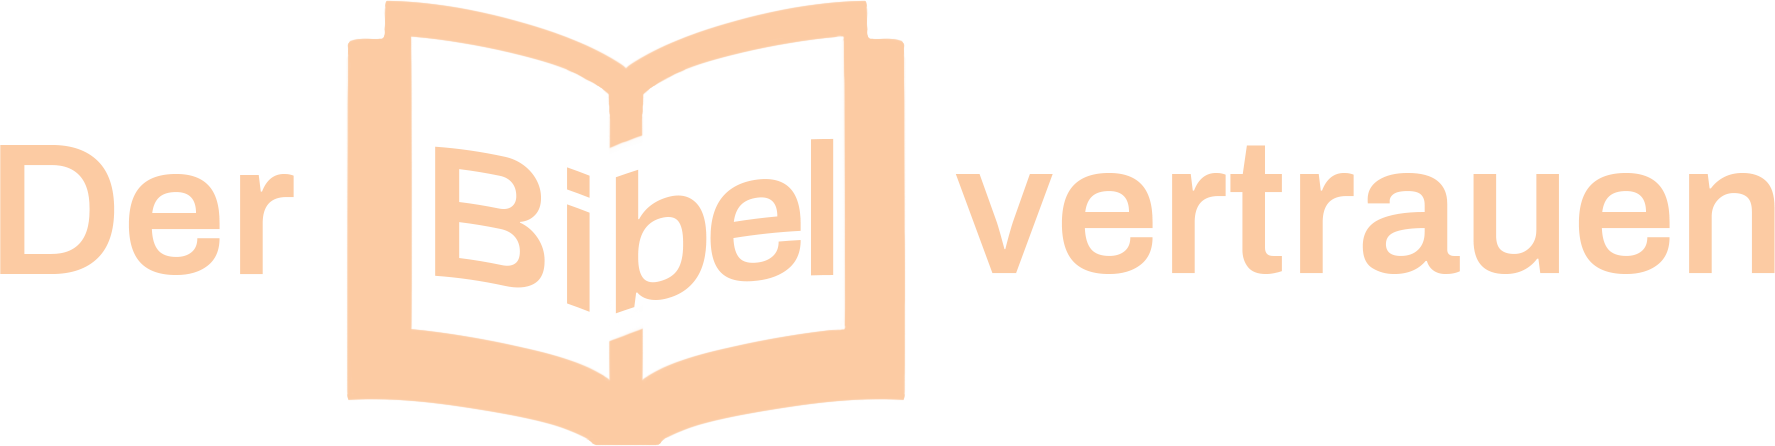 logo derbibelvertrauen